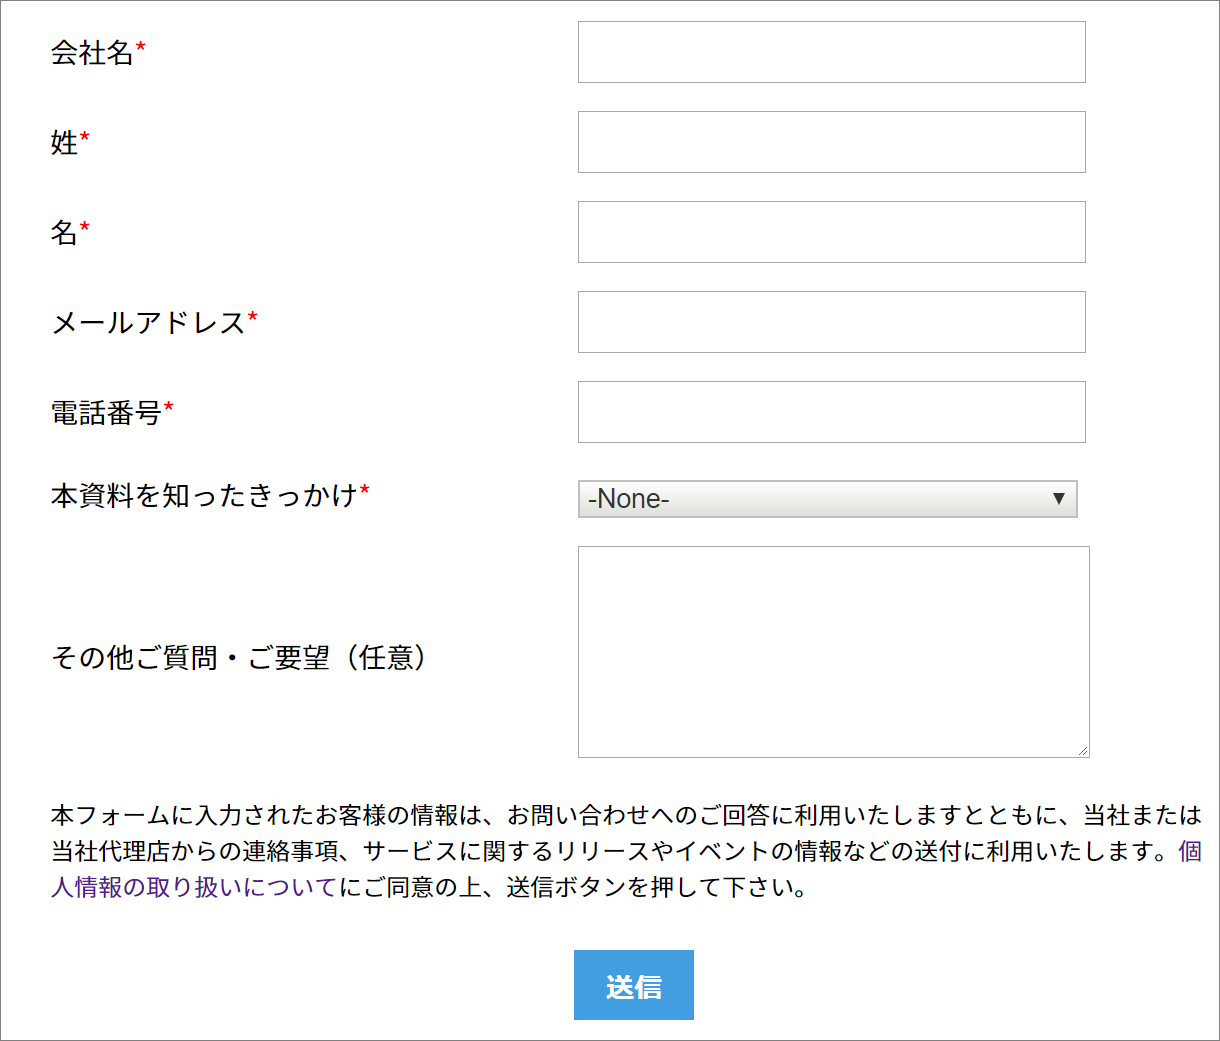 zoho.jpの資料ダウンロード用Webフォーム